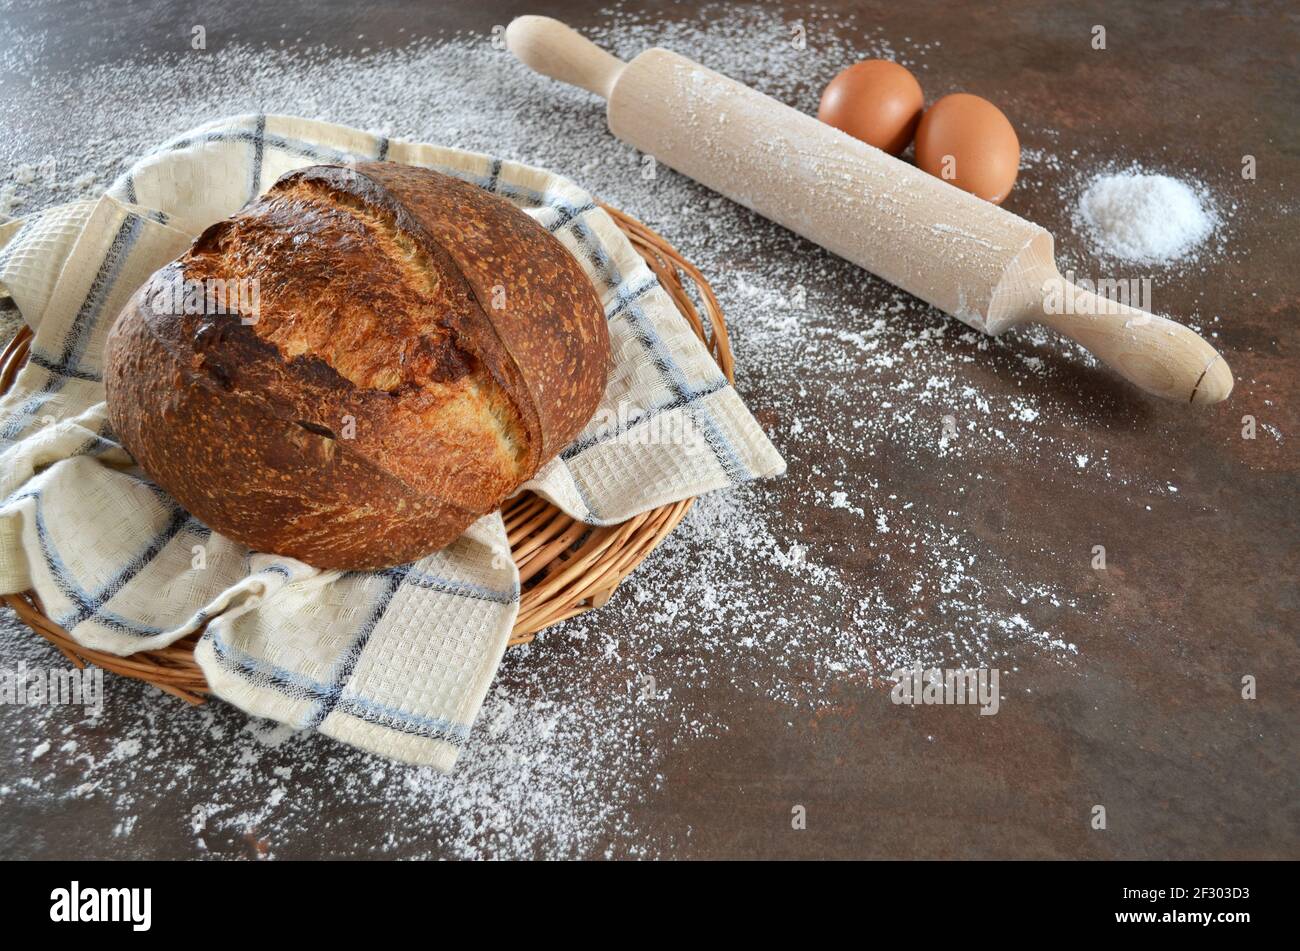 Frisch gebackenes selbstgebackenes Sauerteig-Brot mit einer knusprigen Kruste auf einem Küchentuch auf dem Küchentisch mit Mehl bestreut. Ein Nudelholz, zwei Eier und ein Stockfoto